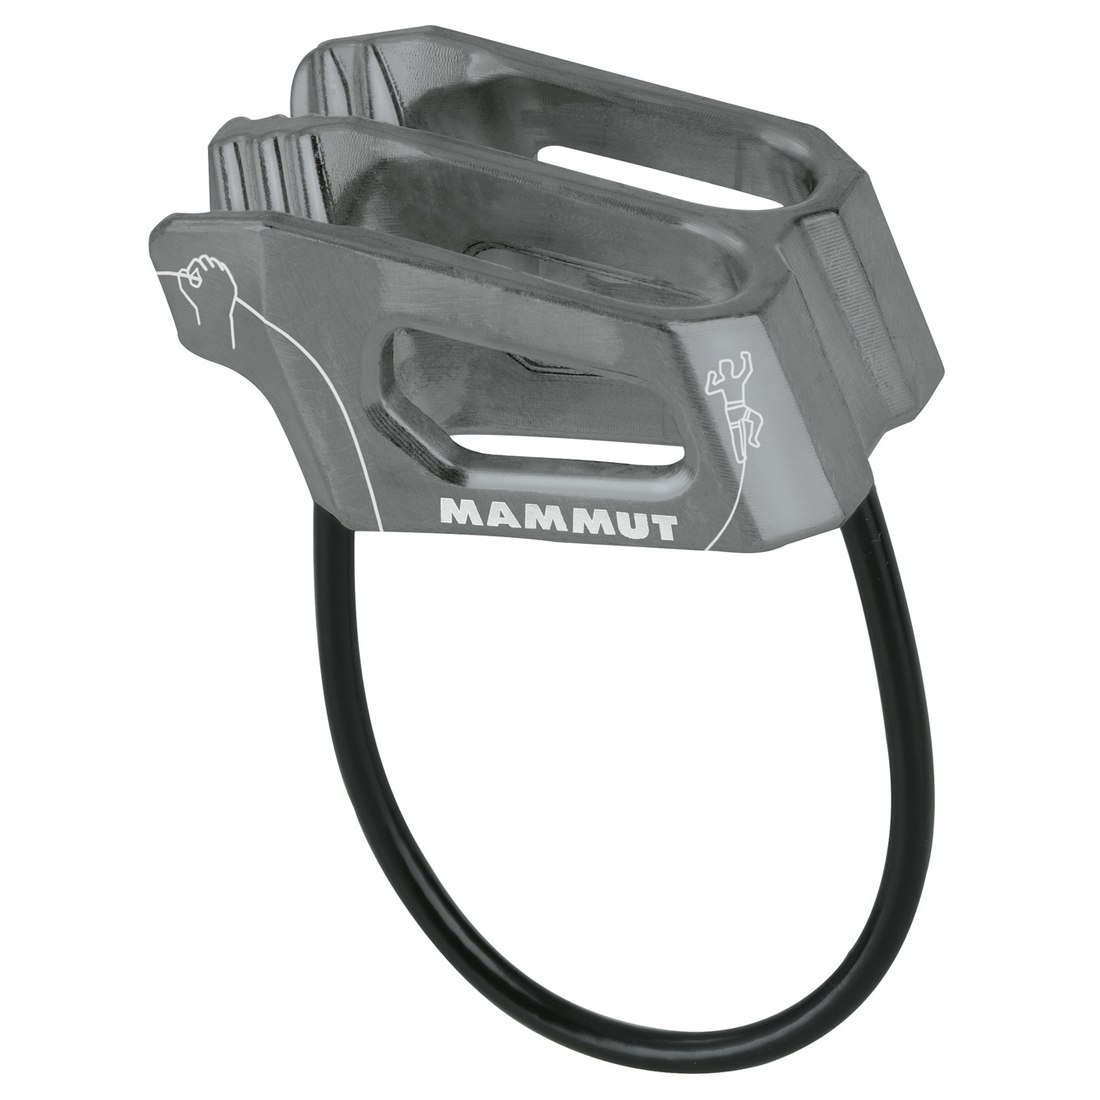 Produktbild von Mammut Crag Light Belay Sicherungsgerät - grey 0139